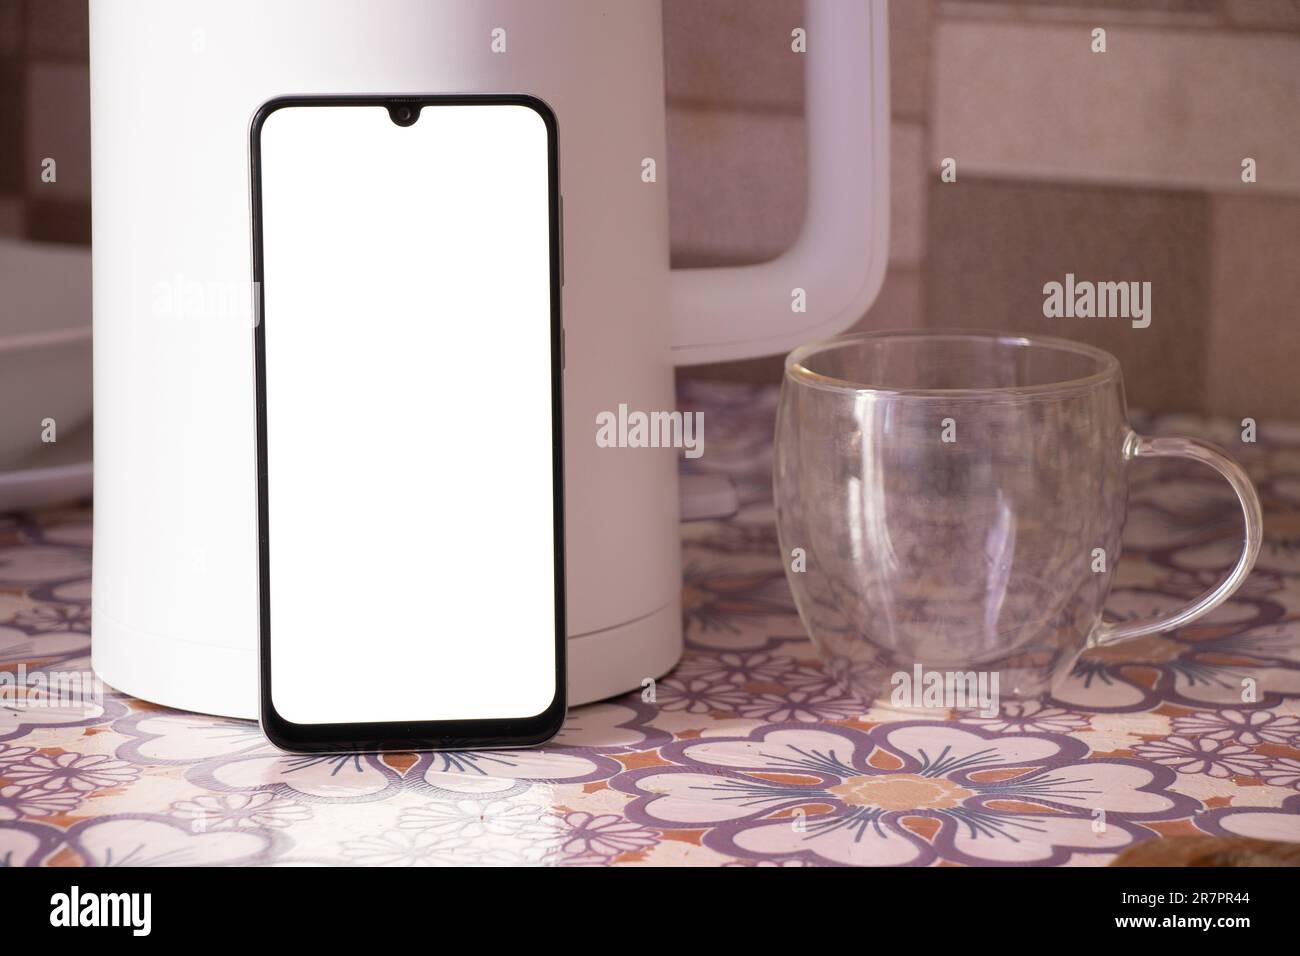 Ein Telefon mit einem leeren weißen Bildschirm steht neben einer weißen Teekanne und einer Tasse auf dem Küchentisch Stockfoto